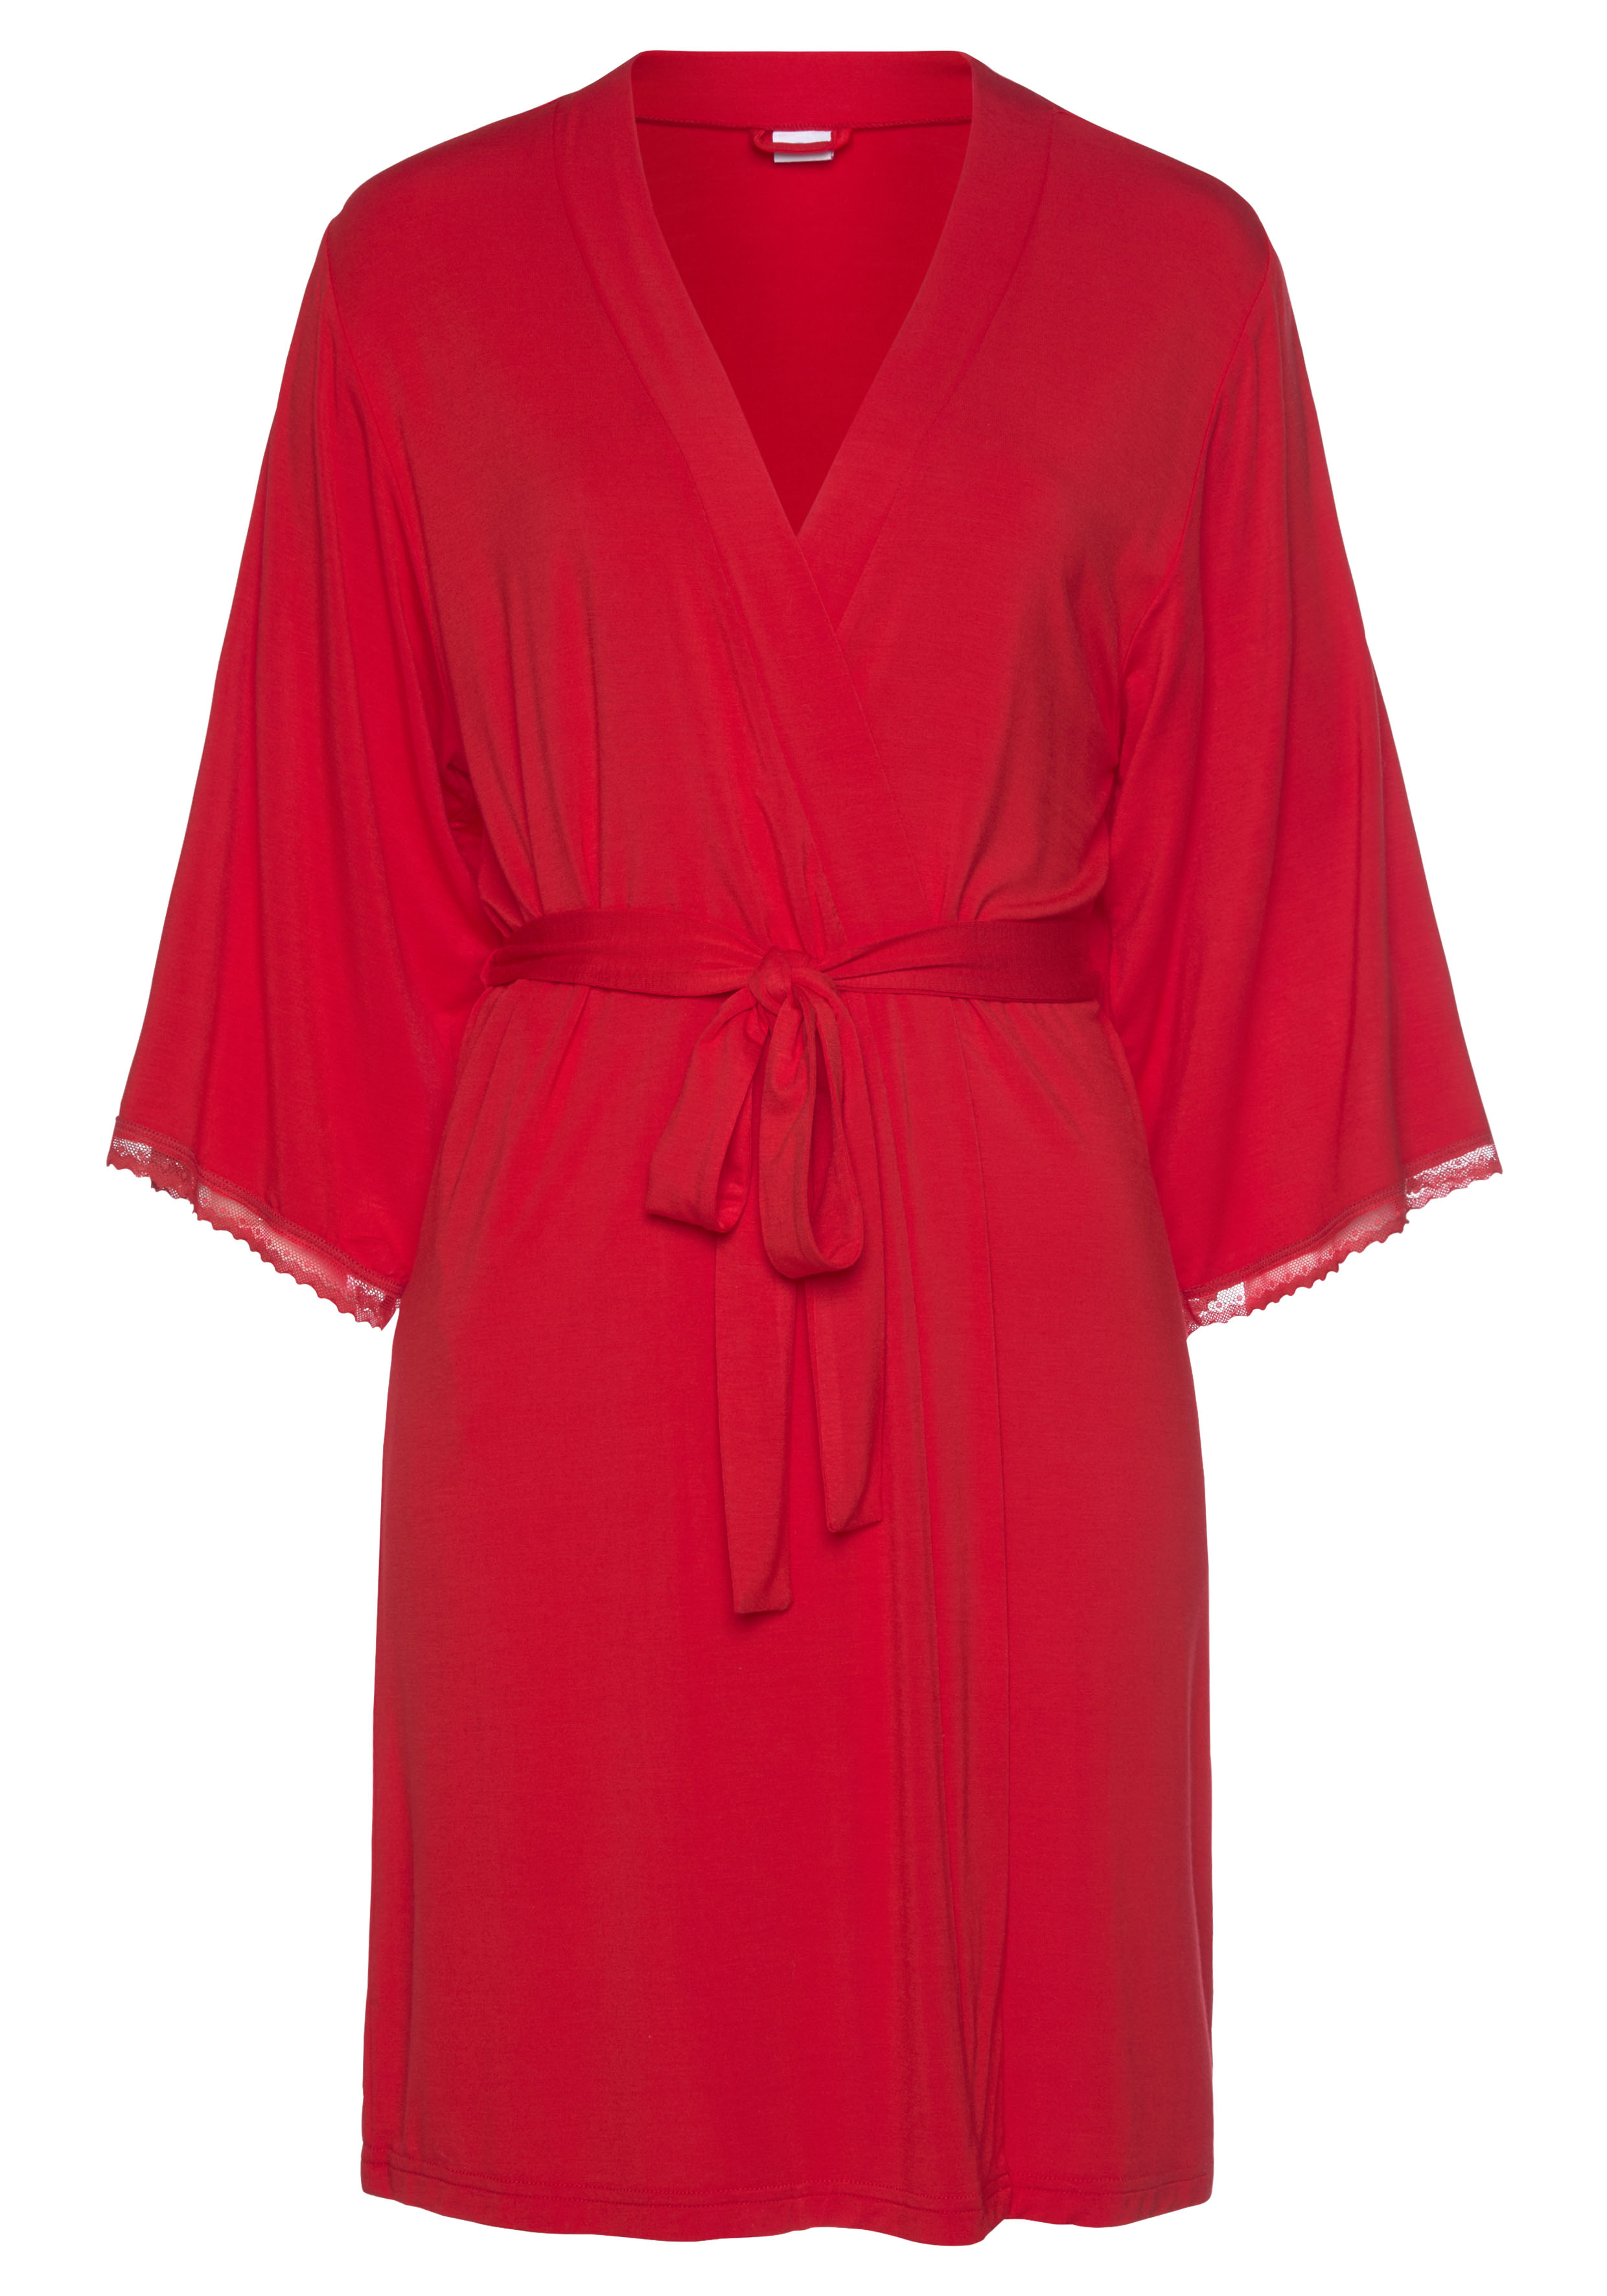 Abbigliamento Donna LASCANA Vestaglia in Rosso Fuoco 